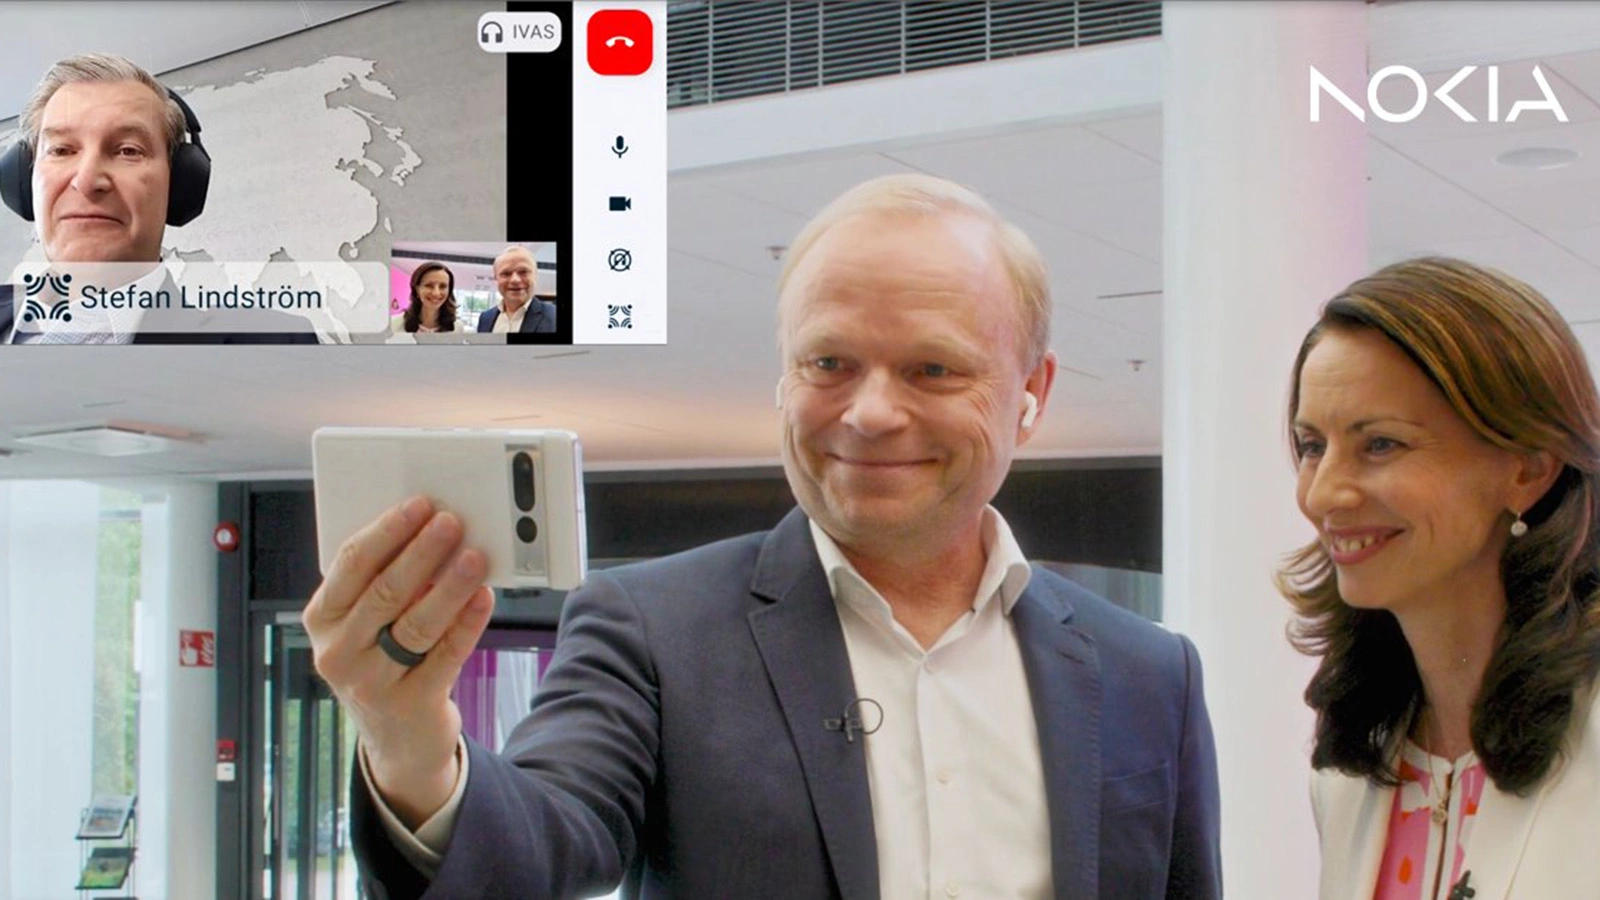 Генеральный директор Nokia Пекка Лундмарк поговорил по видеосвязи с послом Финляндии по цифровизации и новым технологиям Стефаном Линдстремом с использованием пространственного 3D-звука